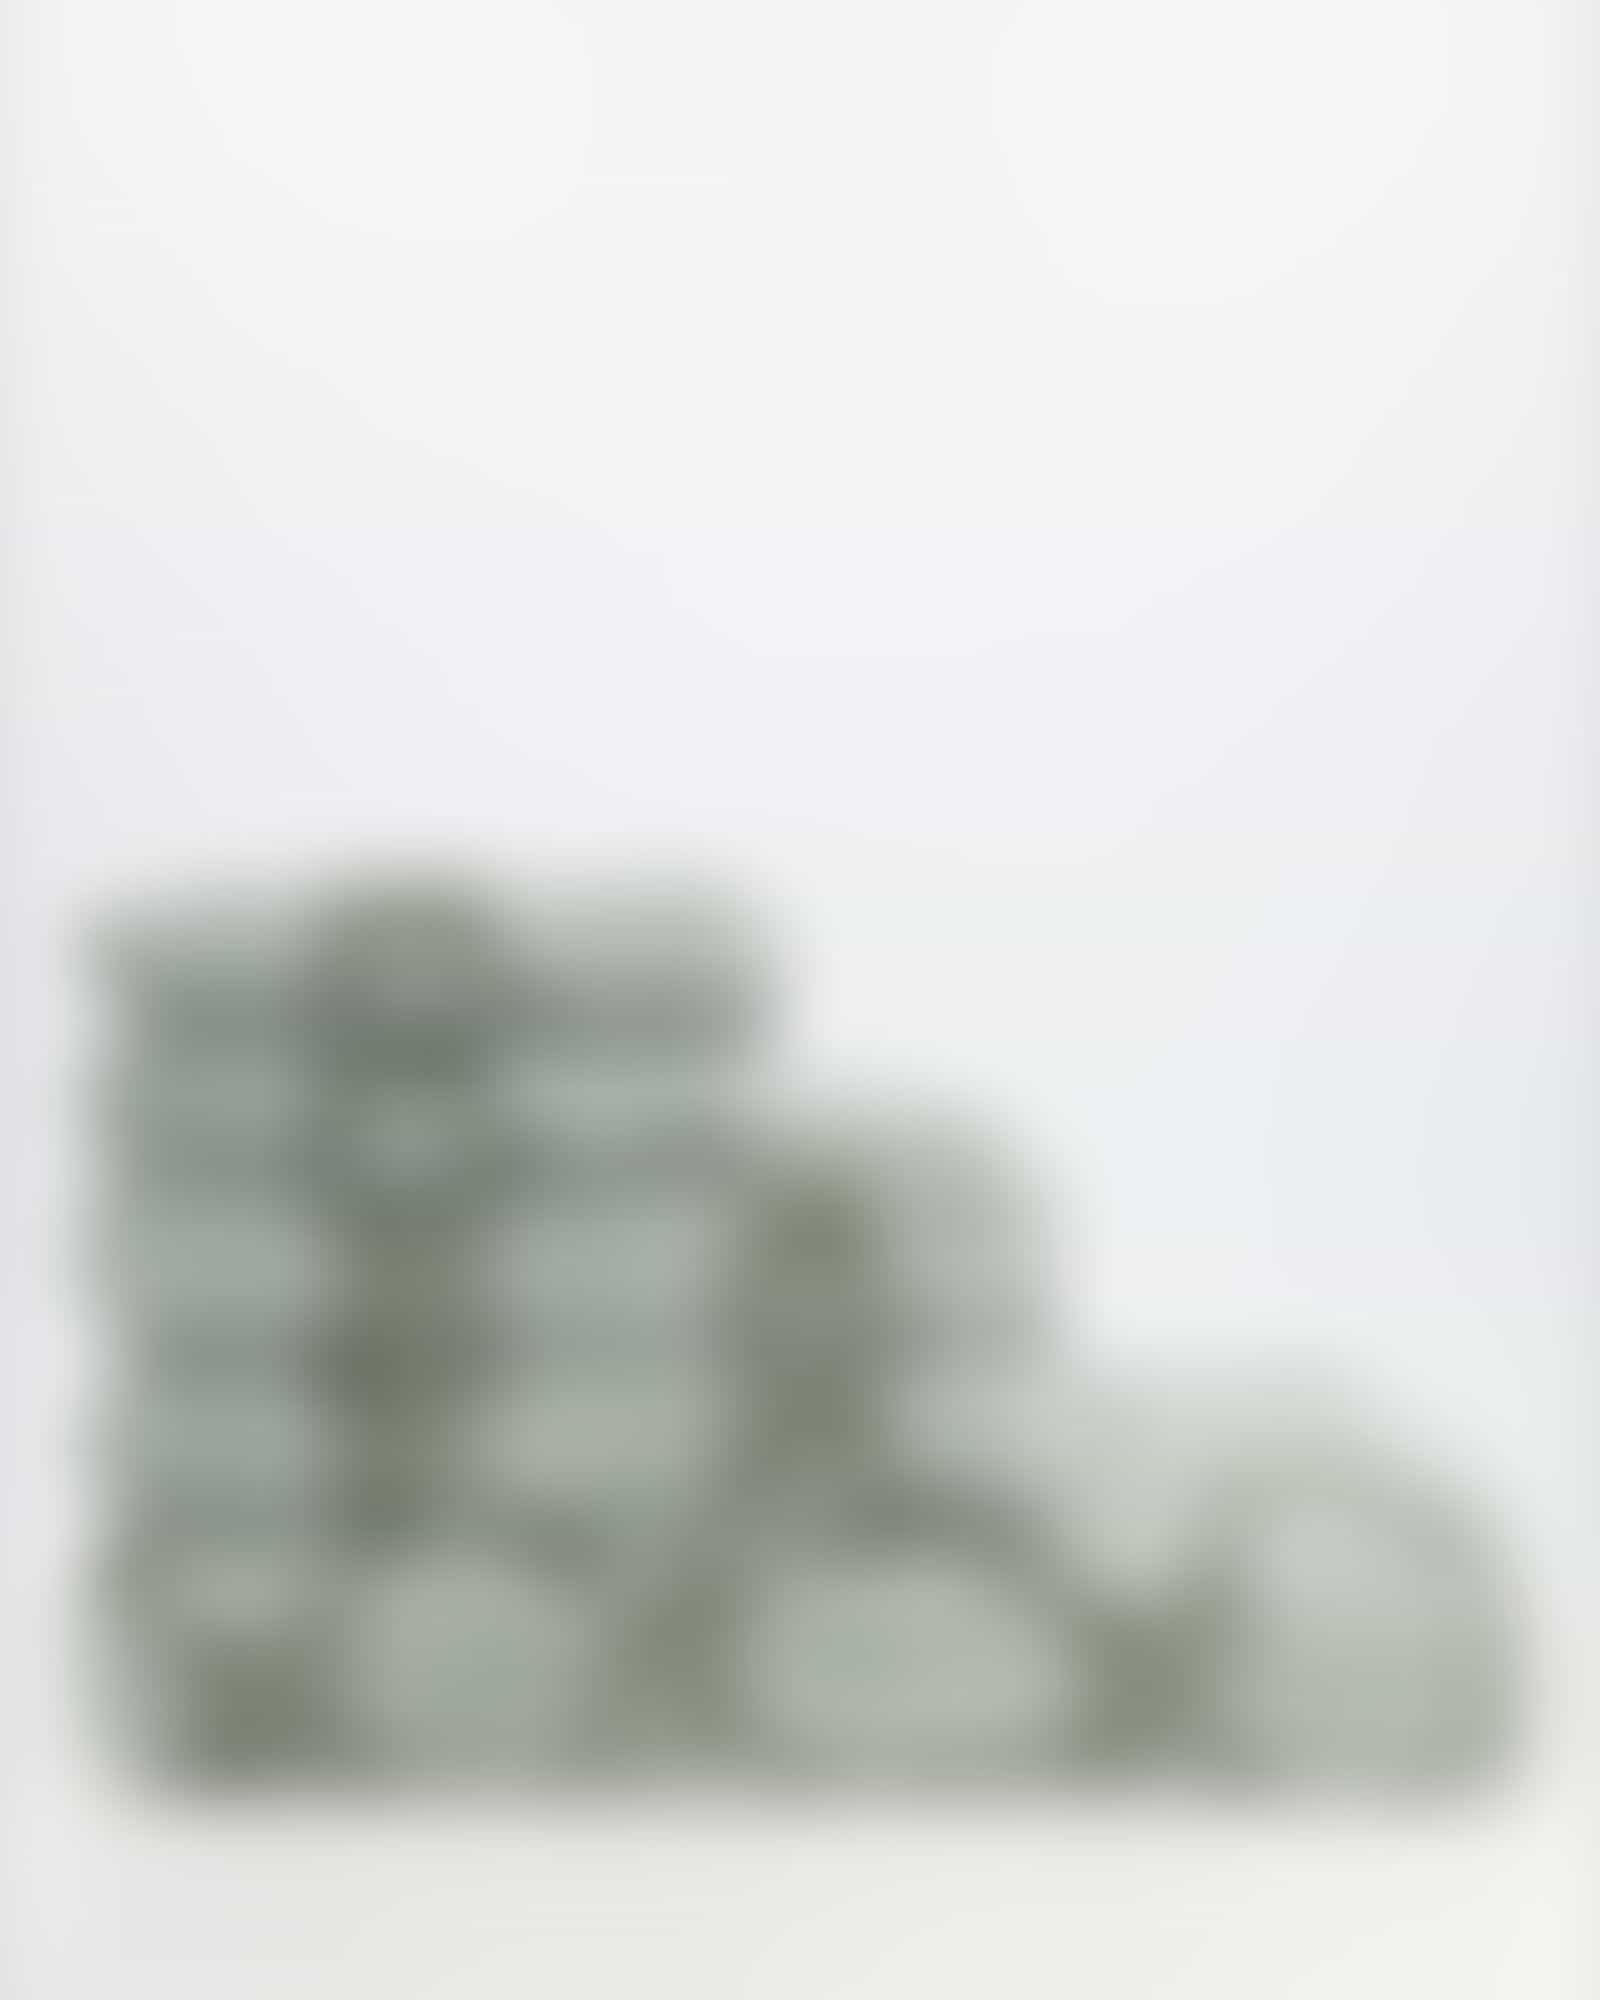 JOOP! Classic - Cornflower 1611 - Farbe: Salbei - 47 - Handtuch 50x100 cm